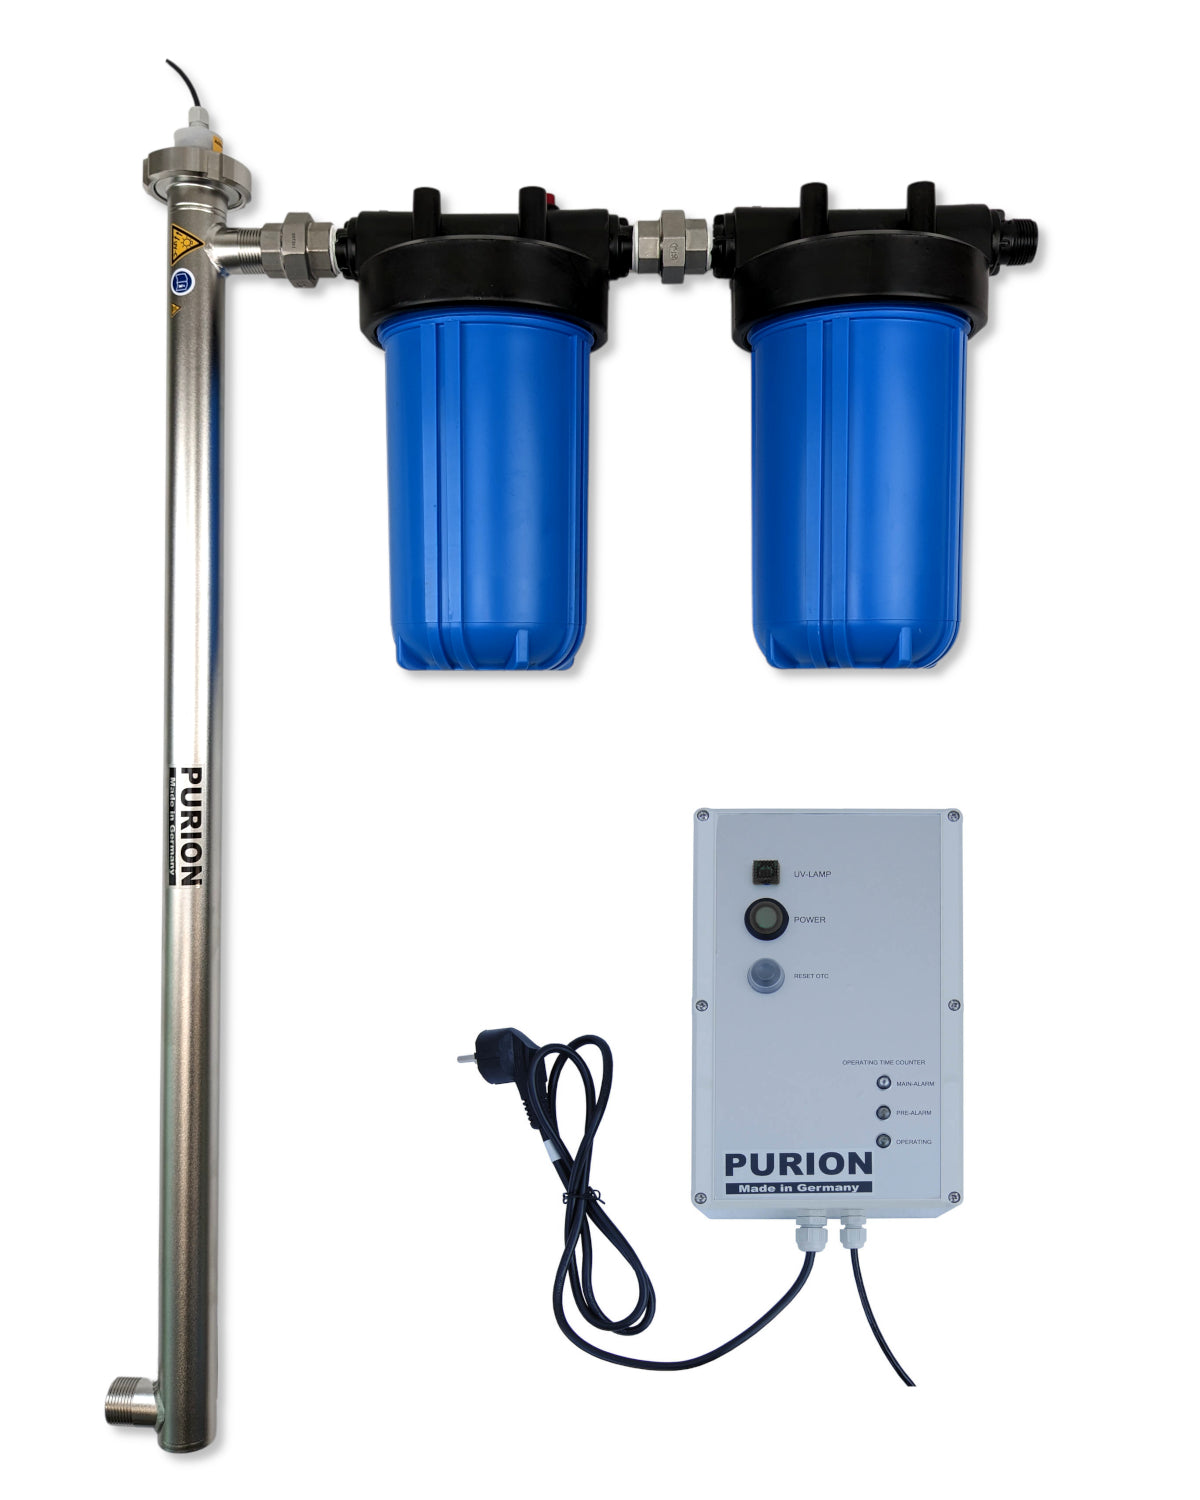 Für die Desinfektion von Wasser bietet die PURION GmbH das PURION 2500 90 W Startersystem an, das höchsten Qualitätsstandards entspricht.